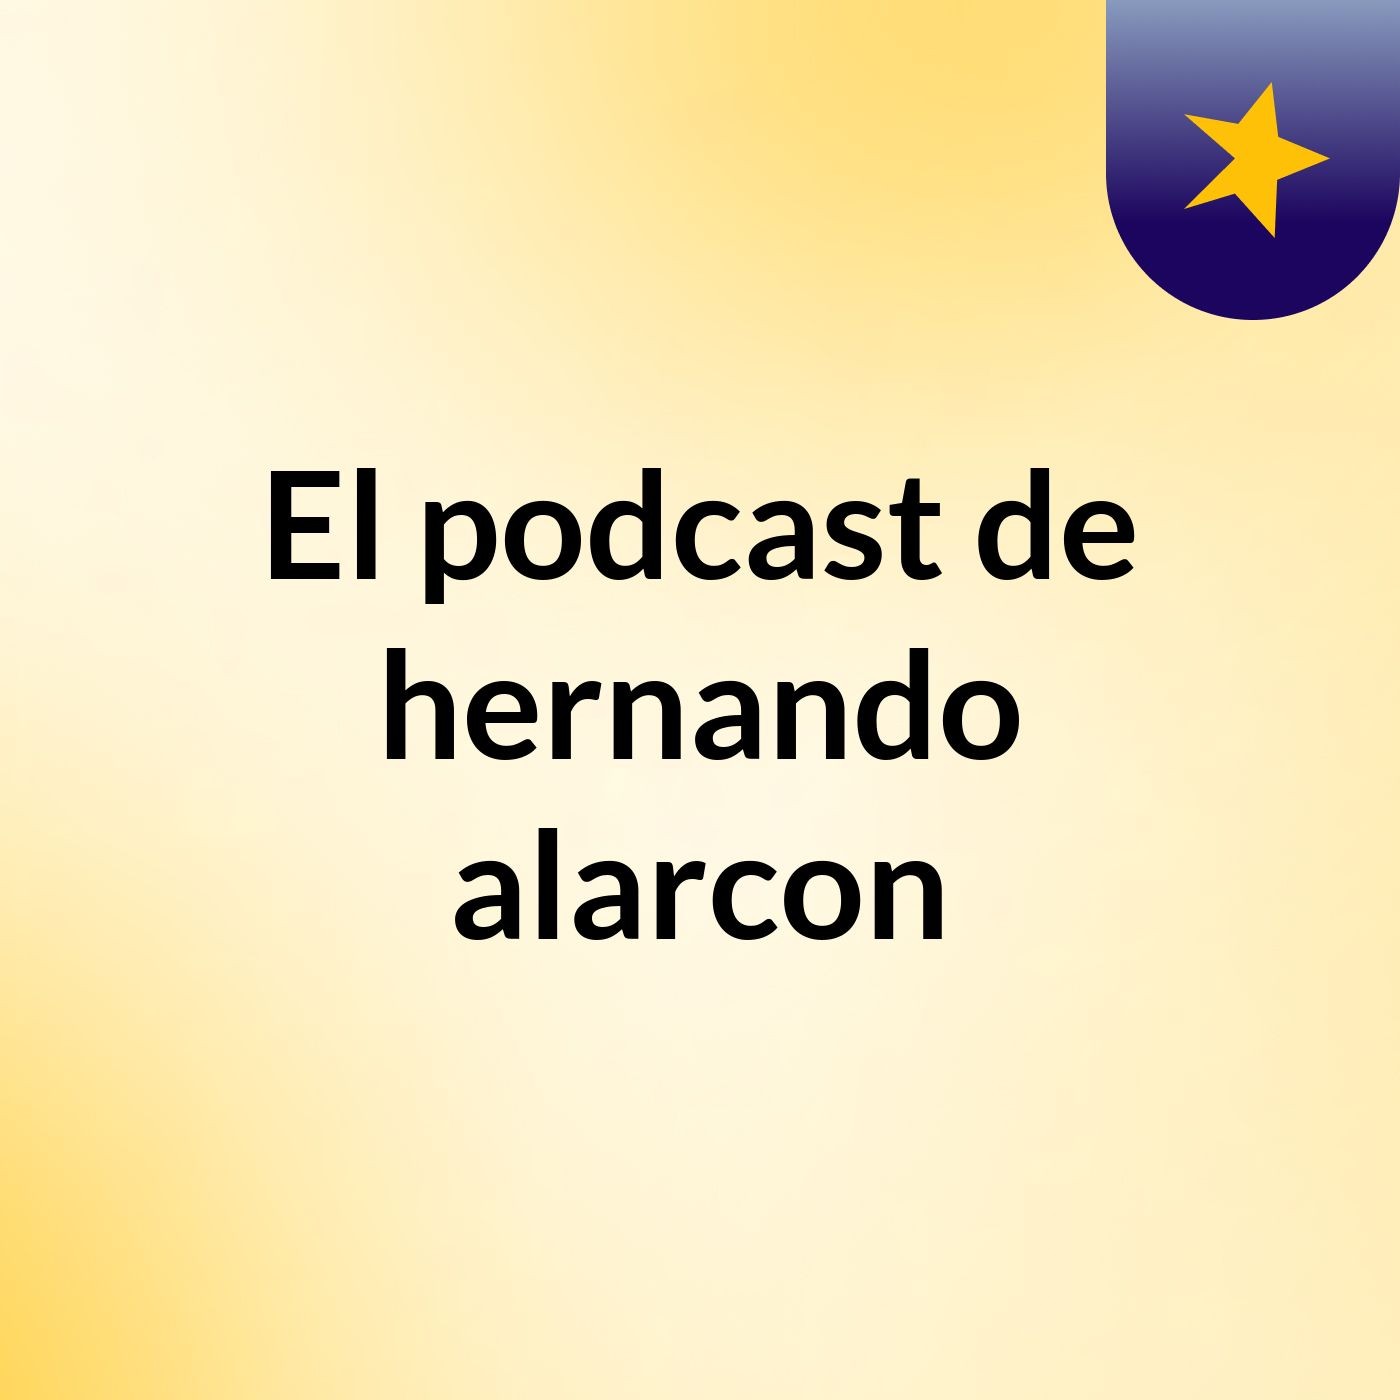 El podcast de hernando alarcon